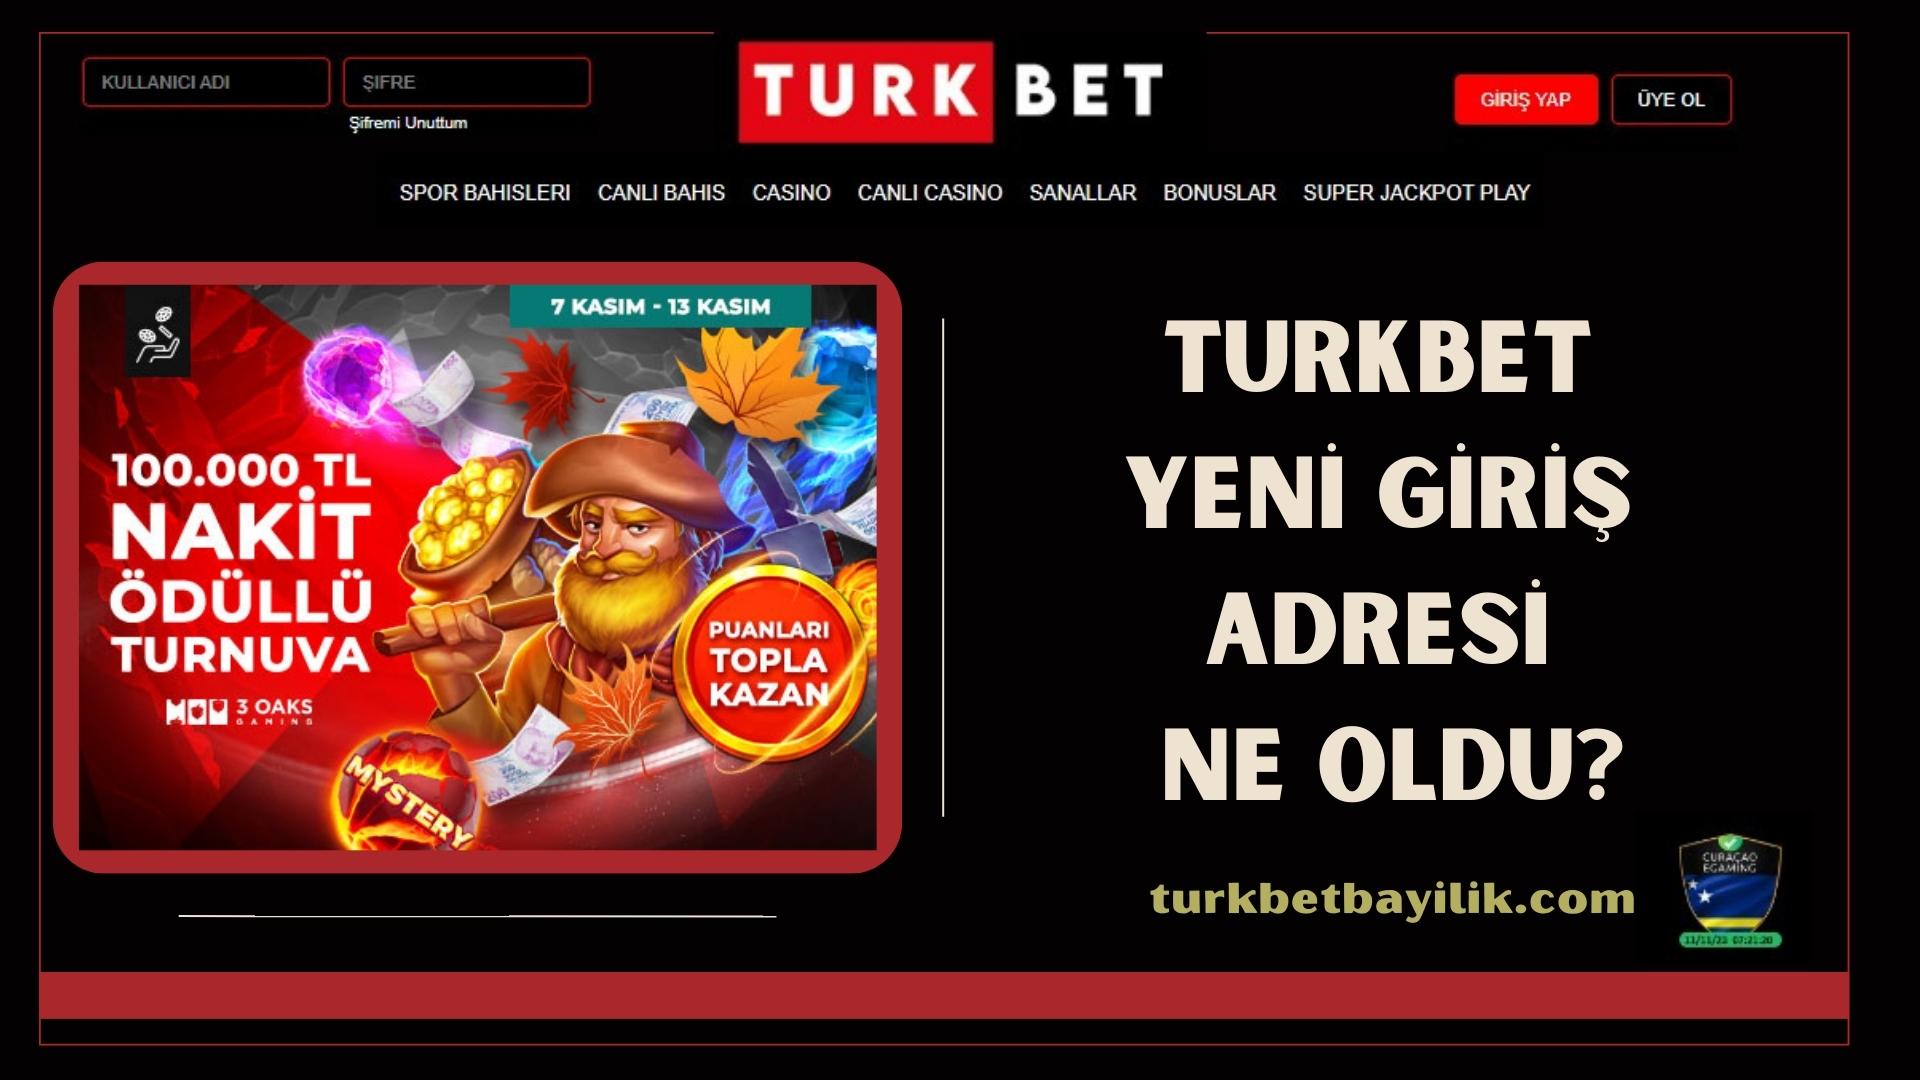 Turkbet Yeni Giriş Adresi Ne Oldu?